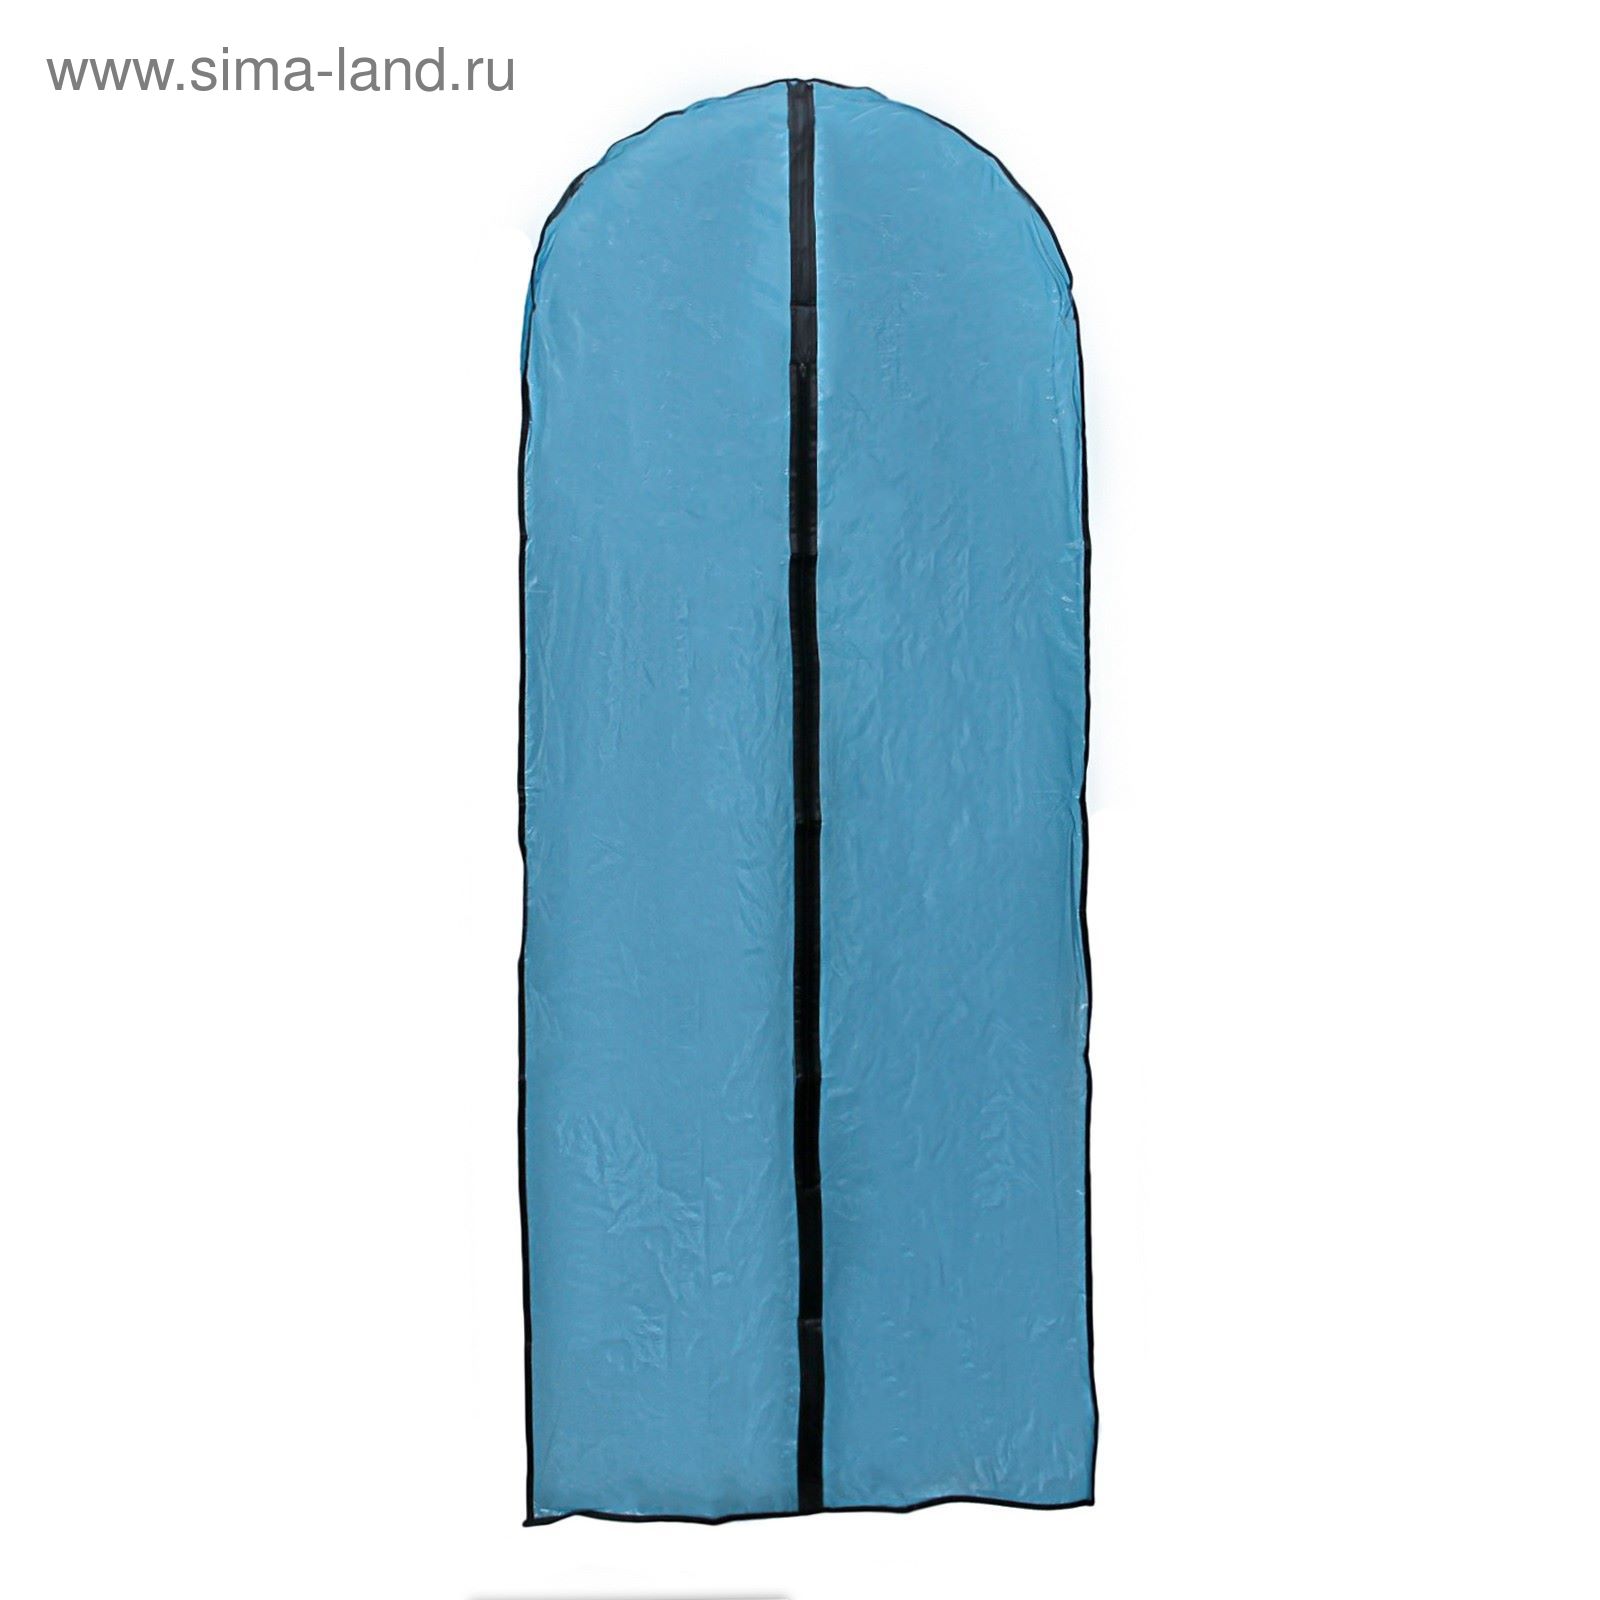 Чехол для одежды 60х137 см синий прозрачный PЕ 2493636